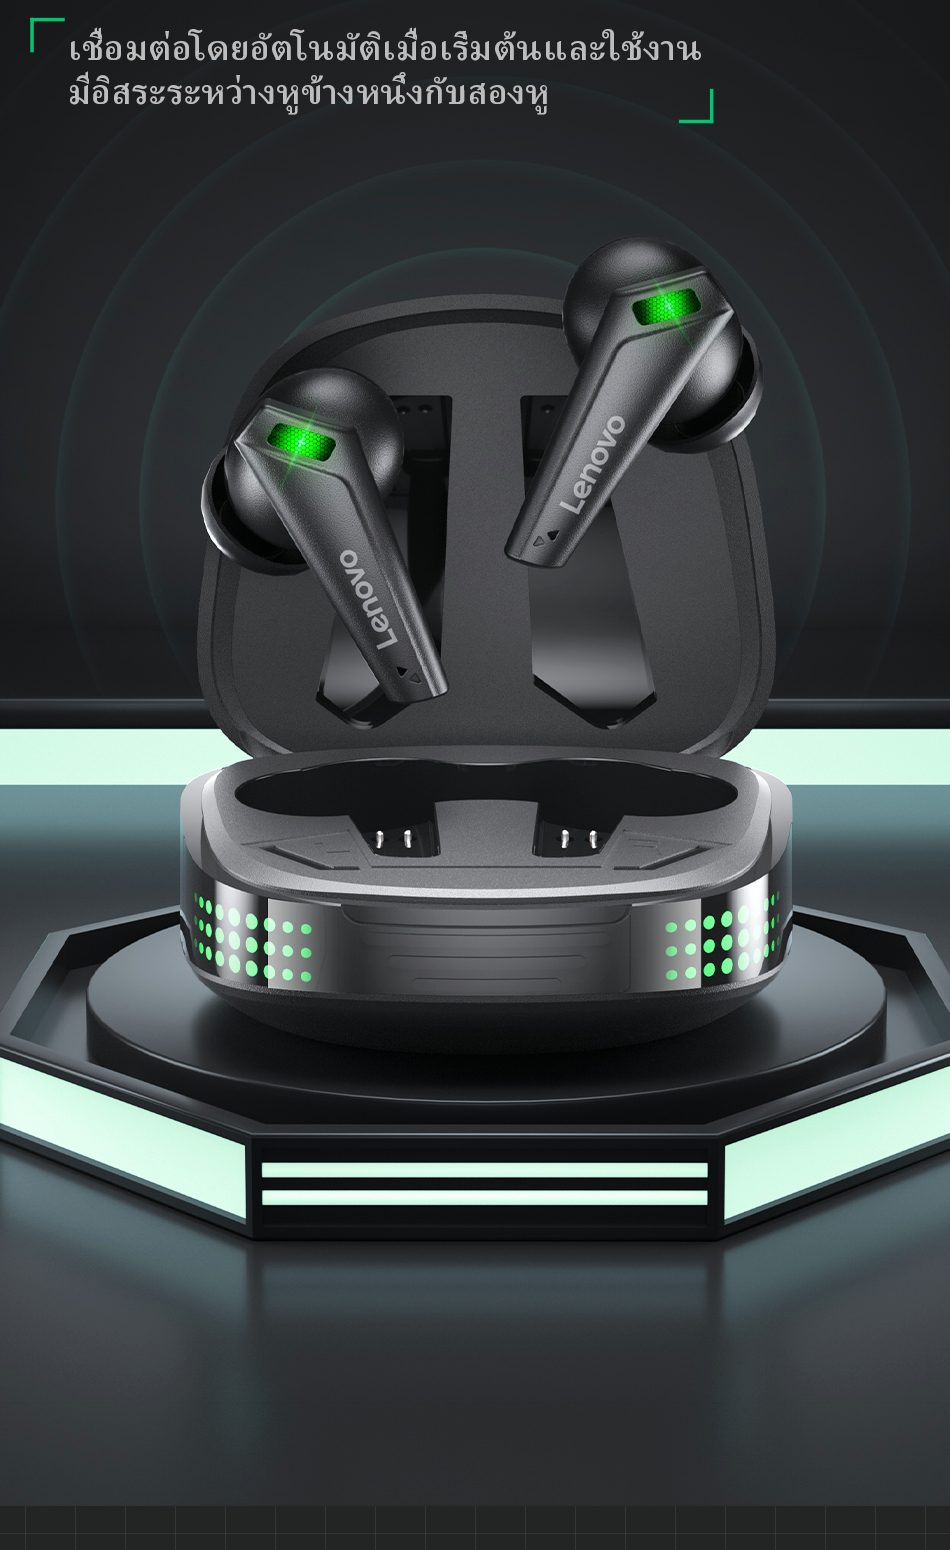 มุมมองเพิ่มเติมเกี่ยวกับ Lenovo Thinkplus XT85 II หูฟังบลูทูธ หูฟังไร้สาย TWS Bluetooth 5.3 หูฟังบลูทูธเกมมิ่ง ความล่าช้าต่ํา พร้อมไมโครโฟน